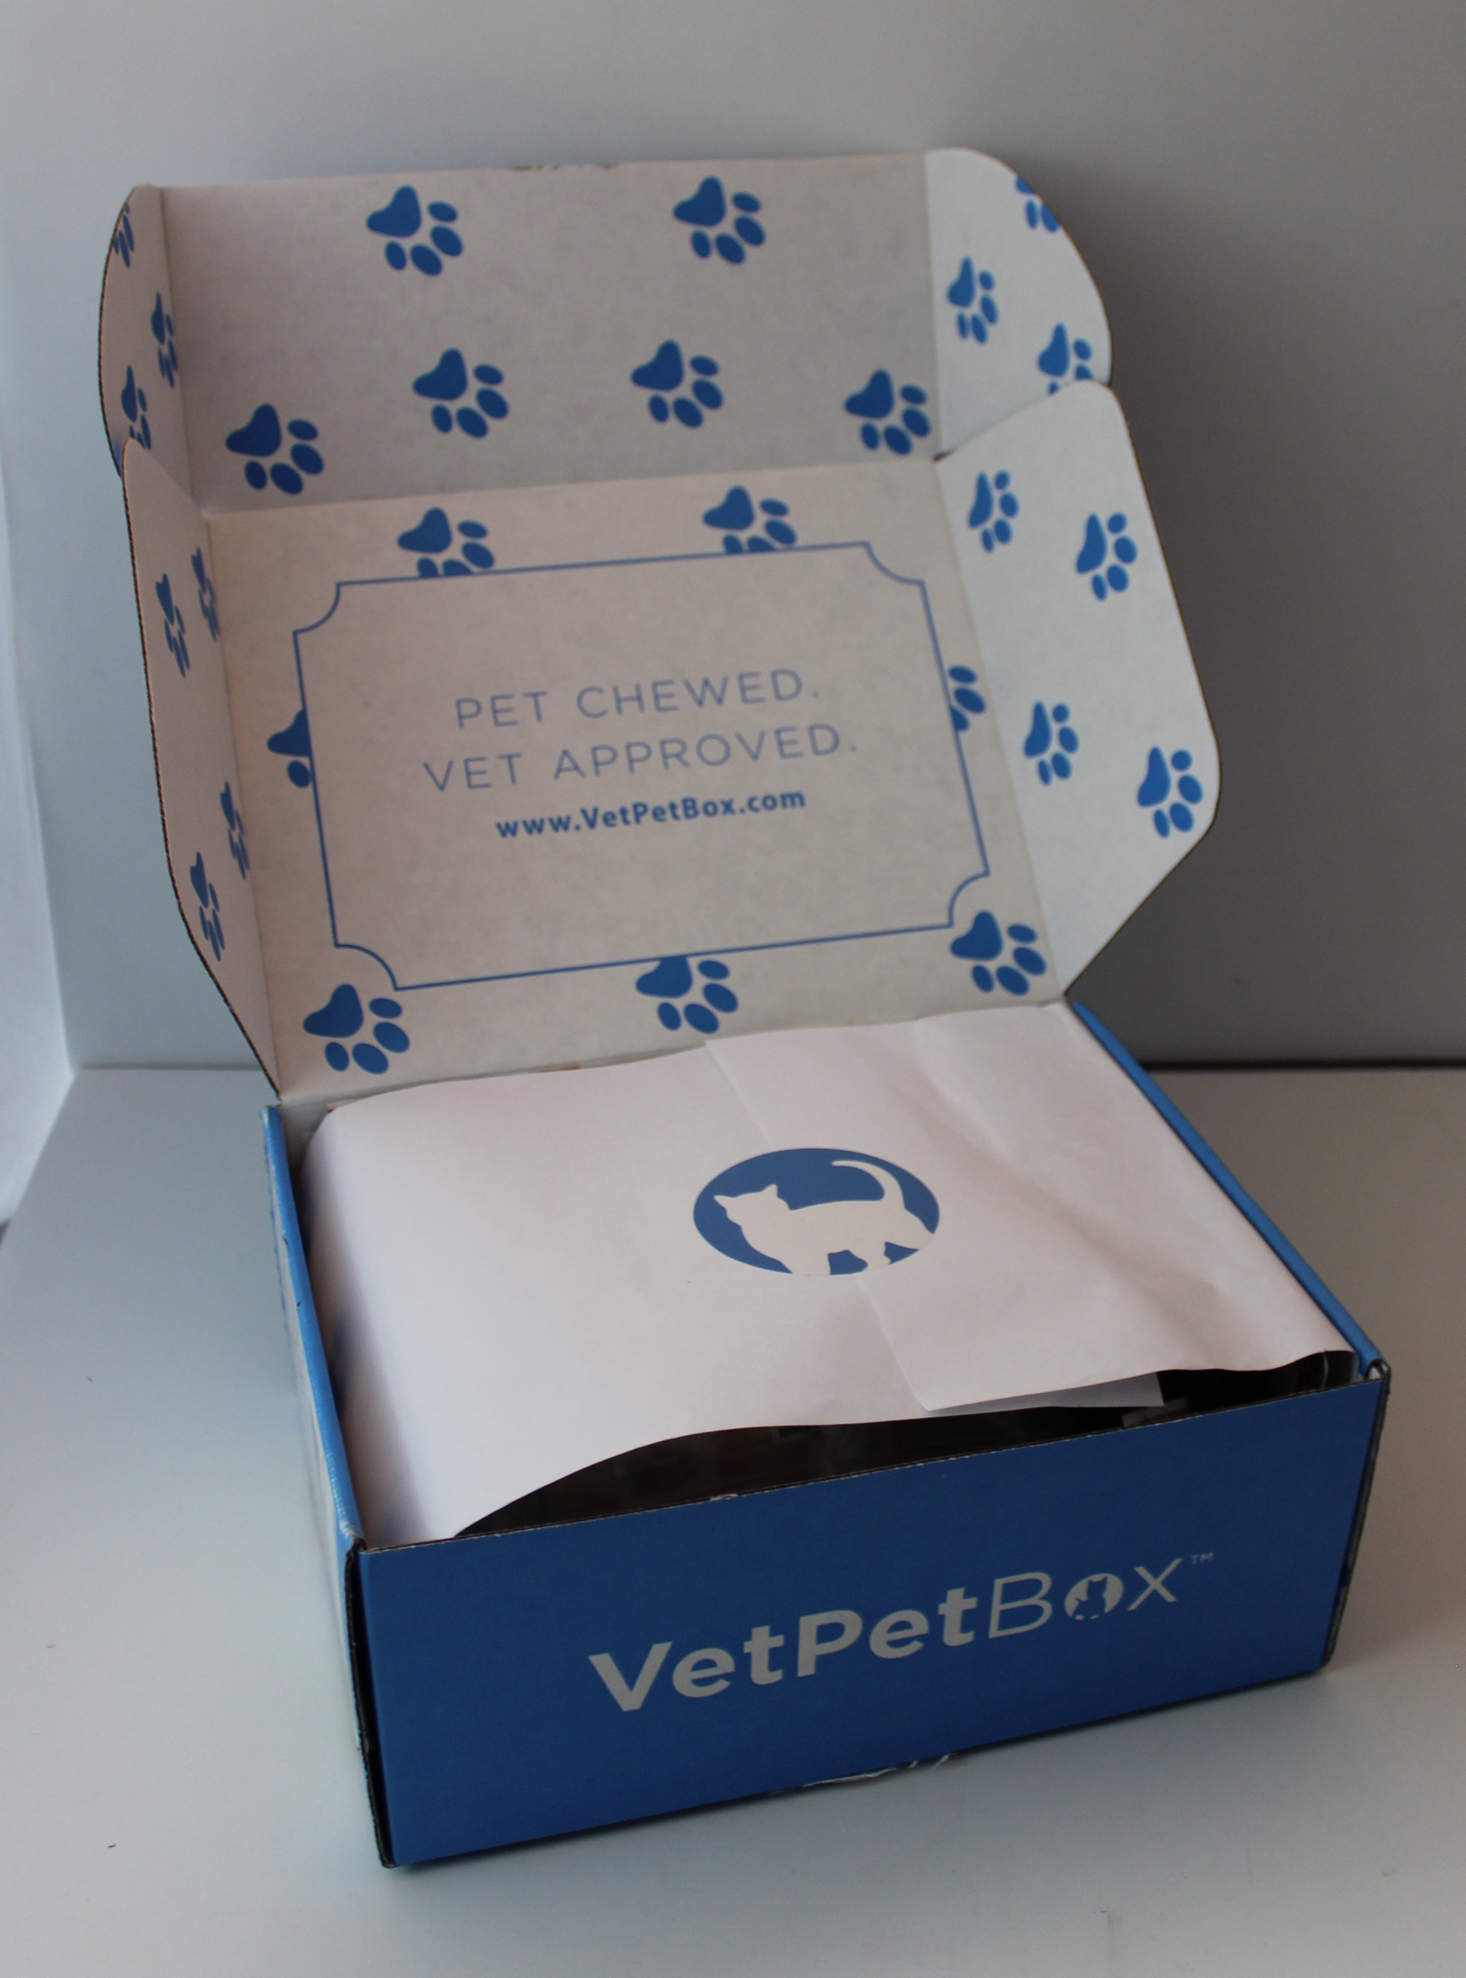 Vet Pet Box Cat November 2019 Inside